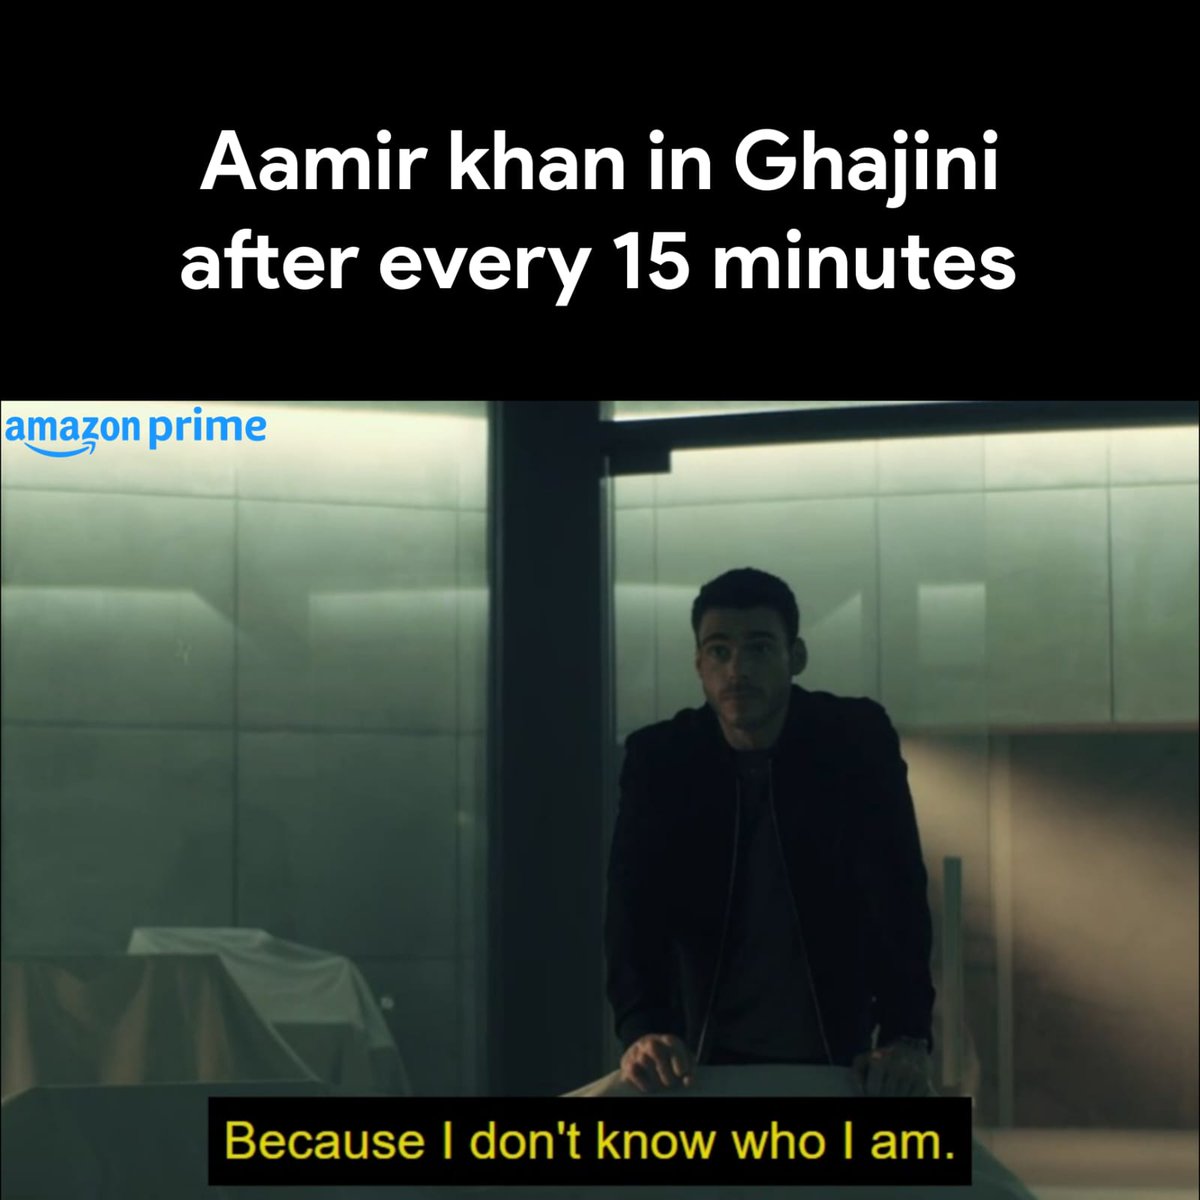 Aamir Khan >>>>
#CitadelOnPrime